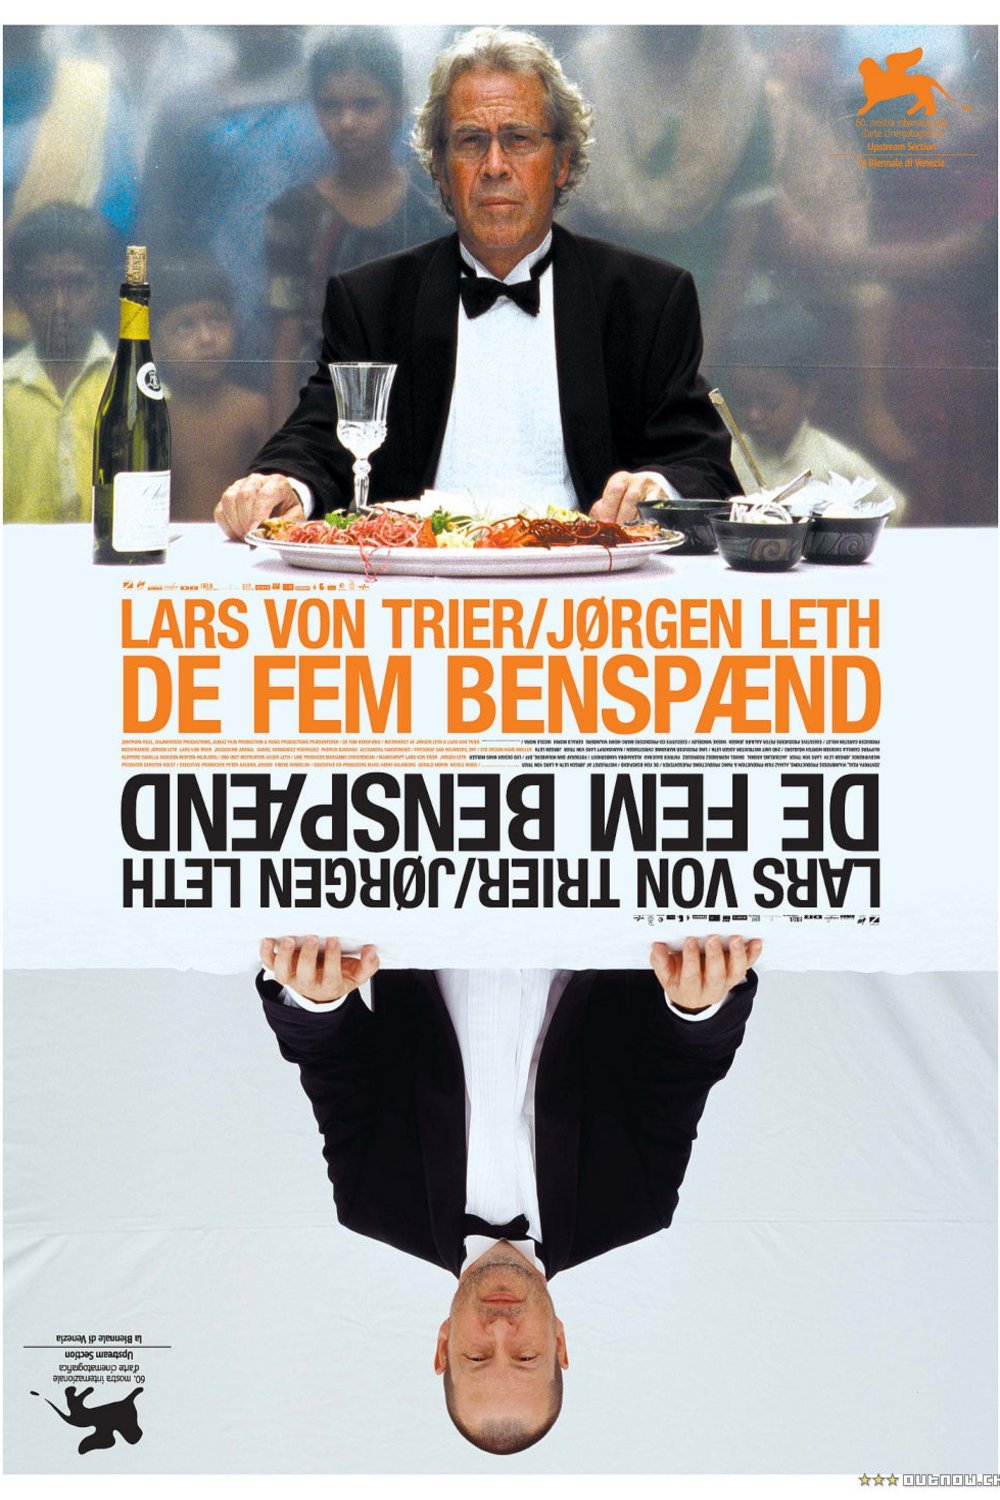 Danish poster of the movie De Fem benspaend